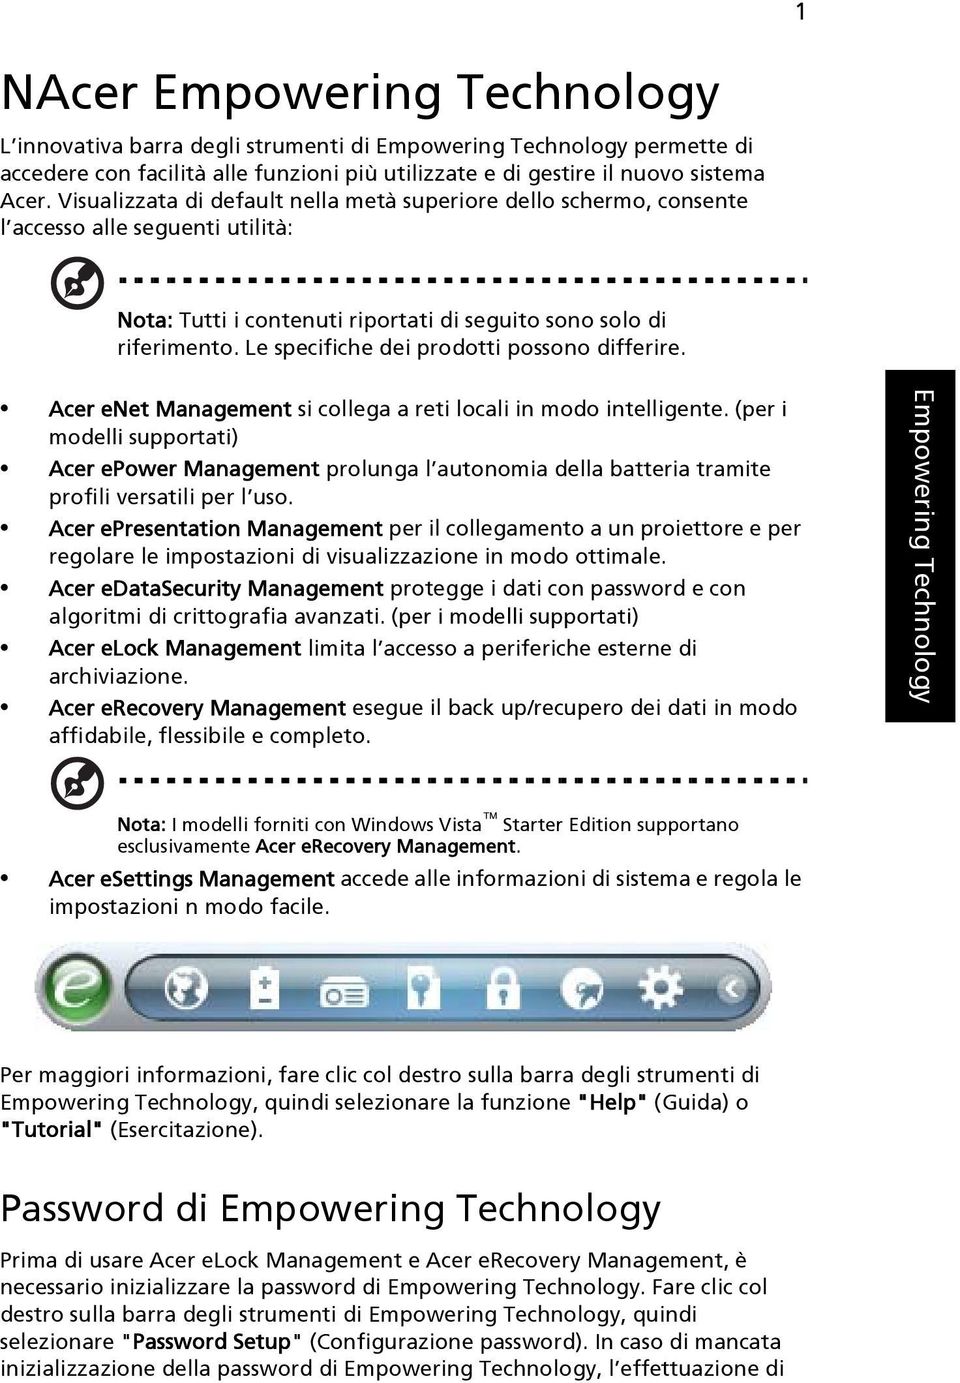 Le specifiche dei prodotti possono differire. Acer enet Management si collega a reti locali in modo intelligente.